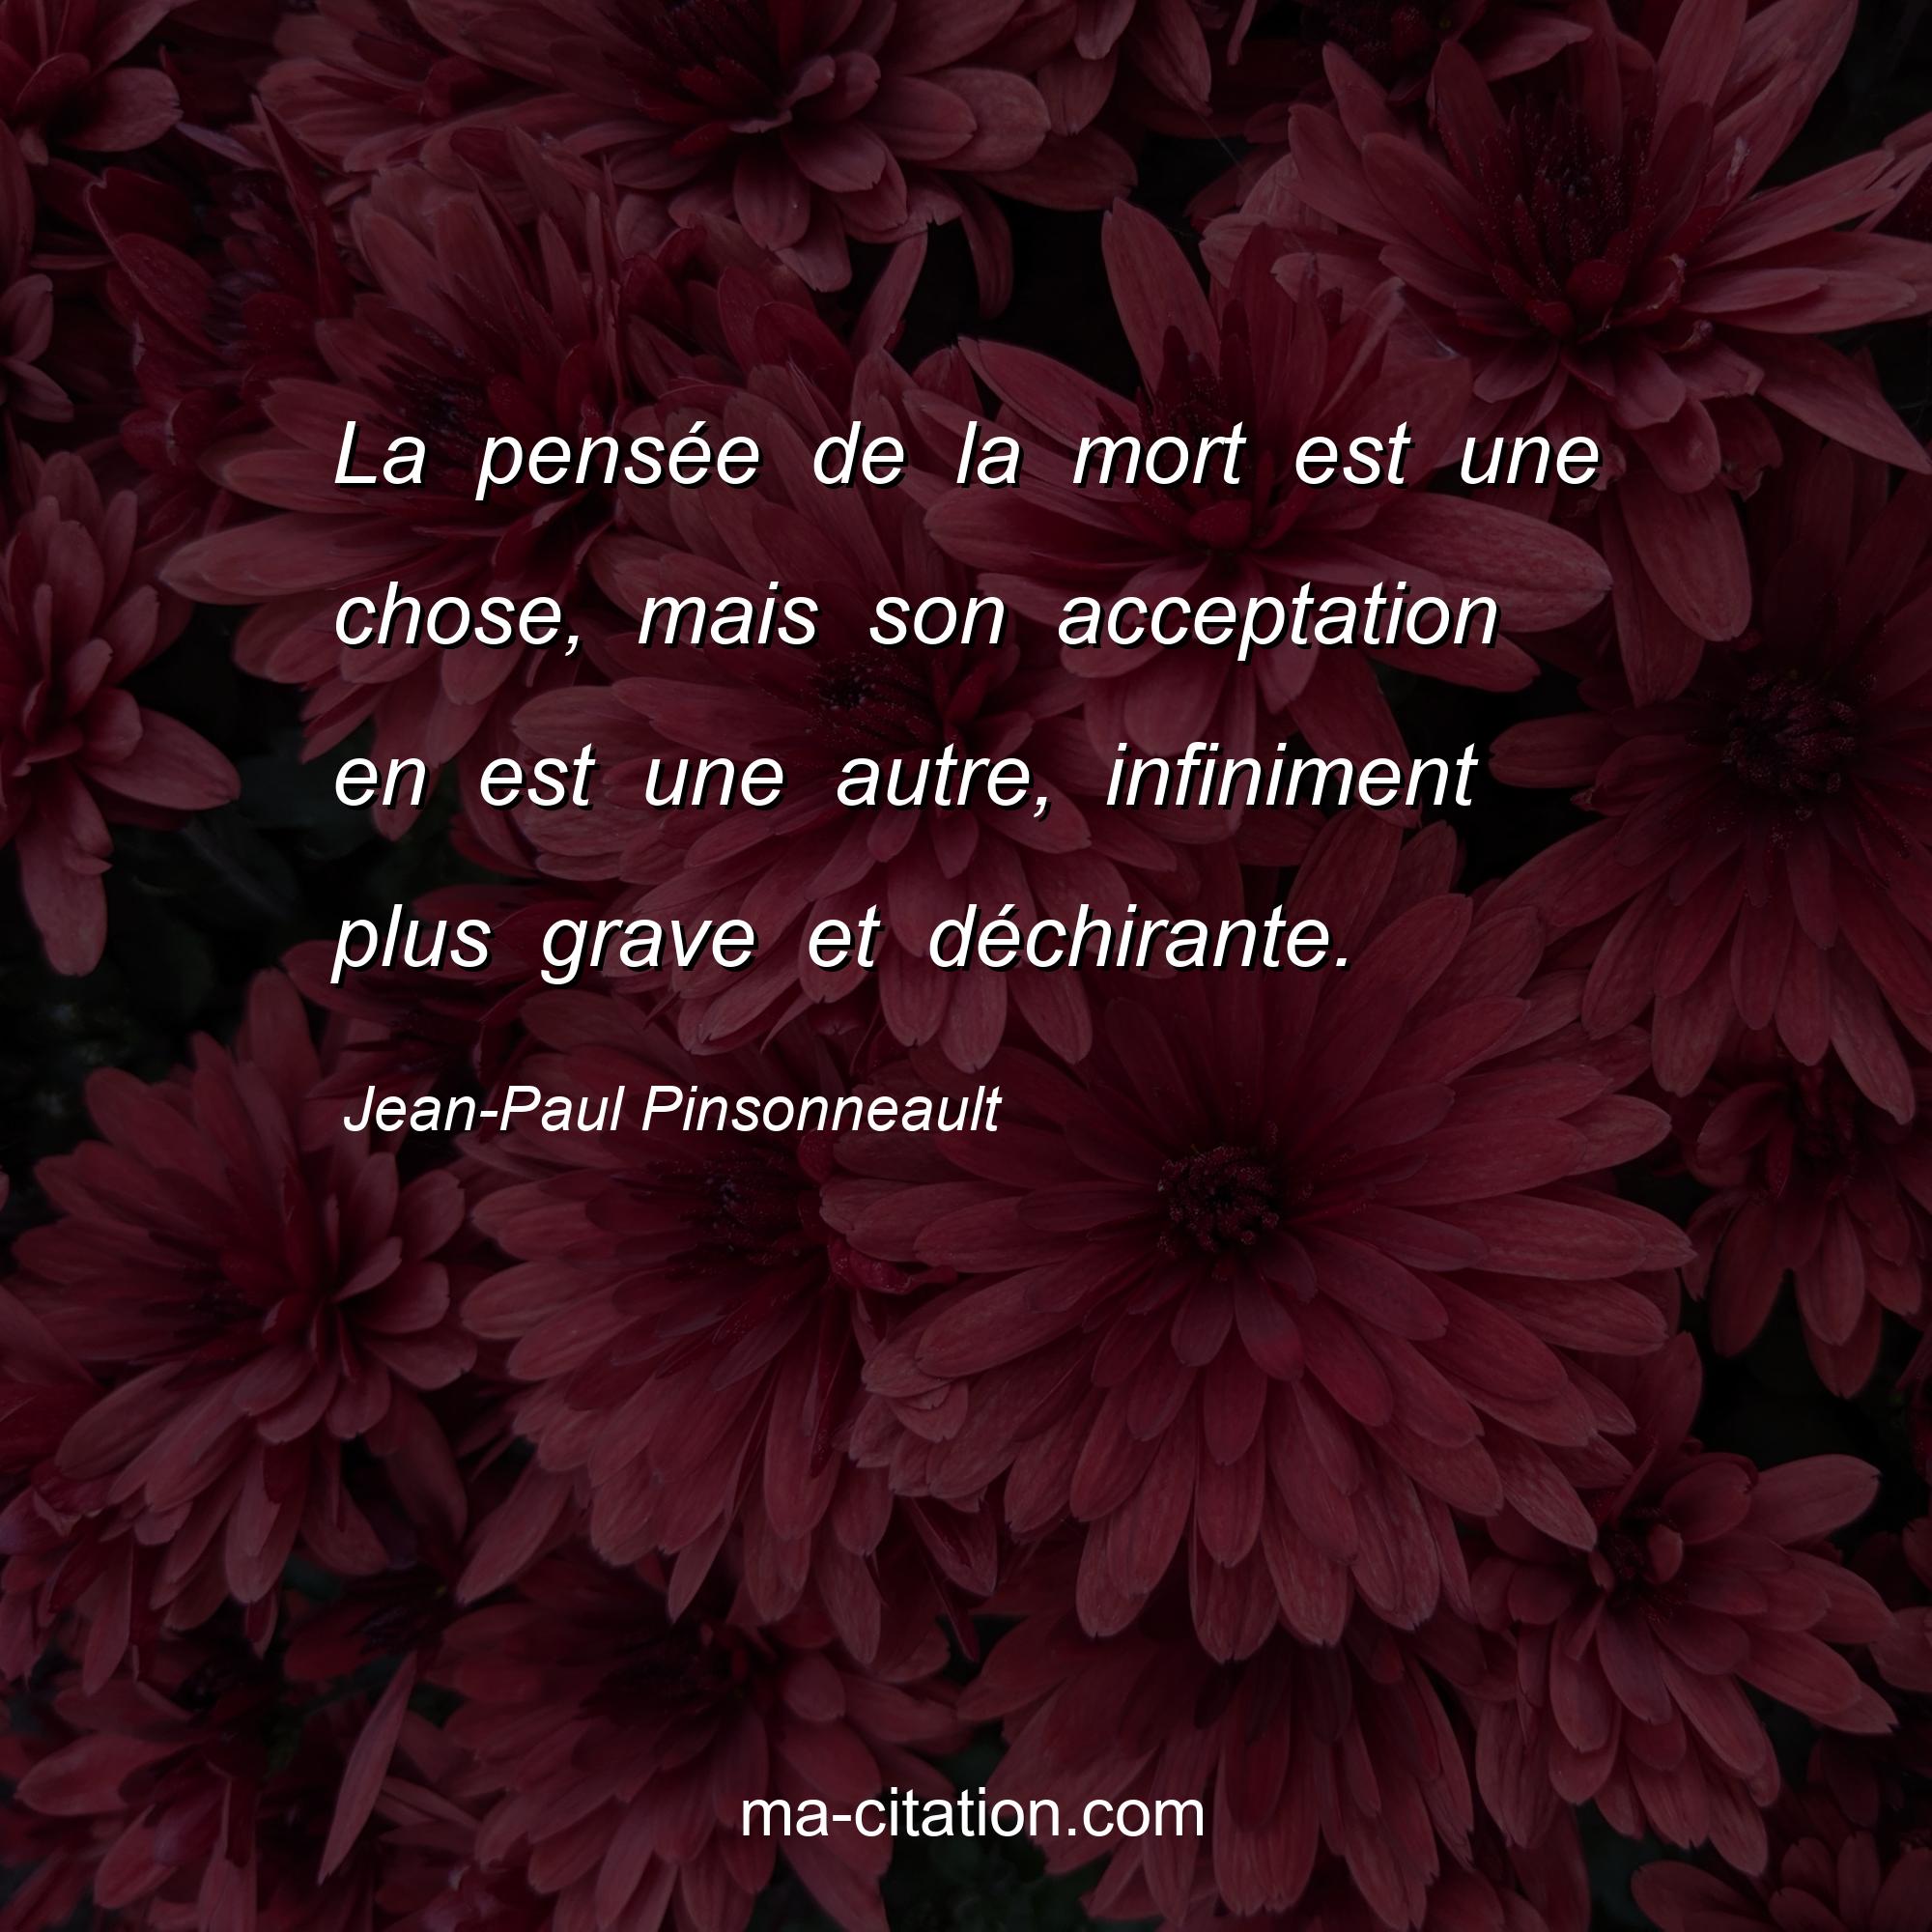 Jean-Paul Pinsonneault : La pensée de la mort est une chose, mais son acceptation en est une autre, infiniment plus grave et déchirante.